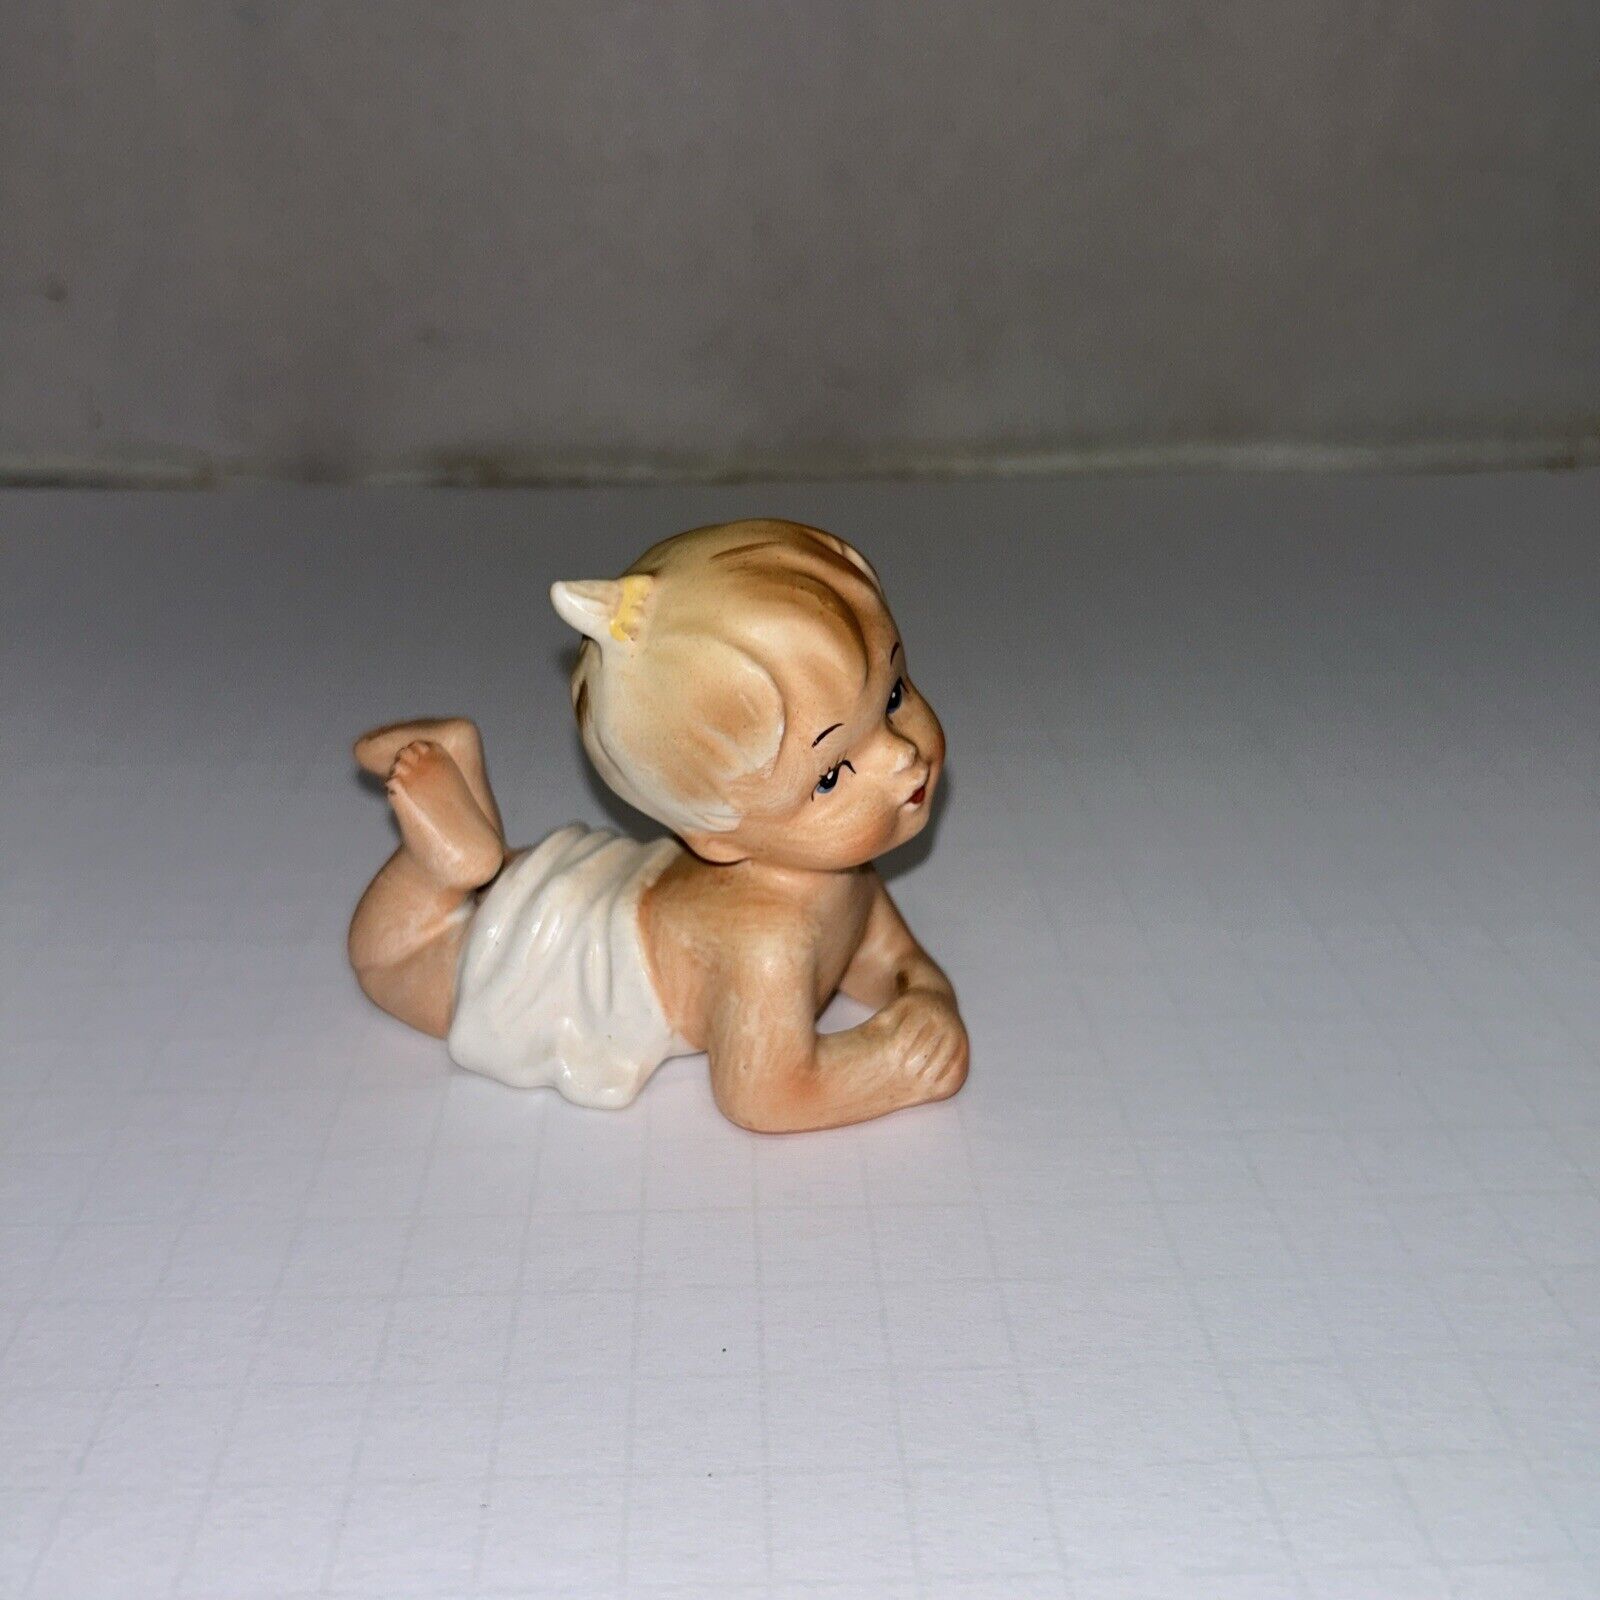 Napcoware Japan Porcelain Baby C-4909 Vintage 3” x 3 1/2” GUC